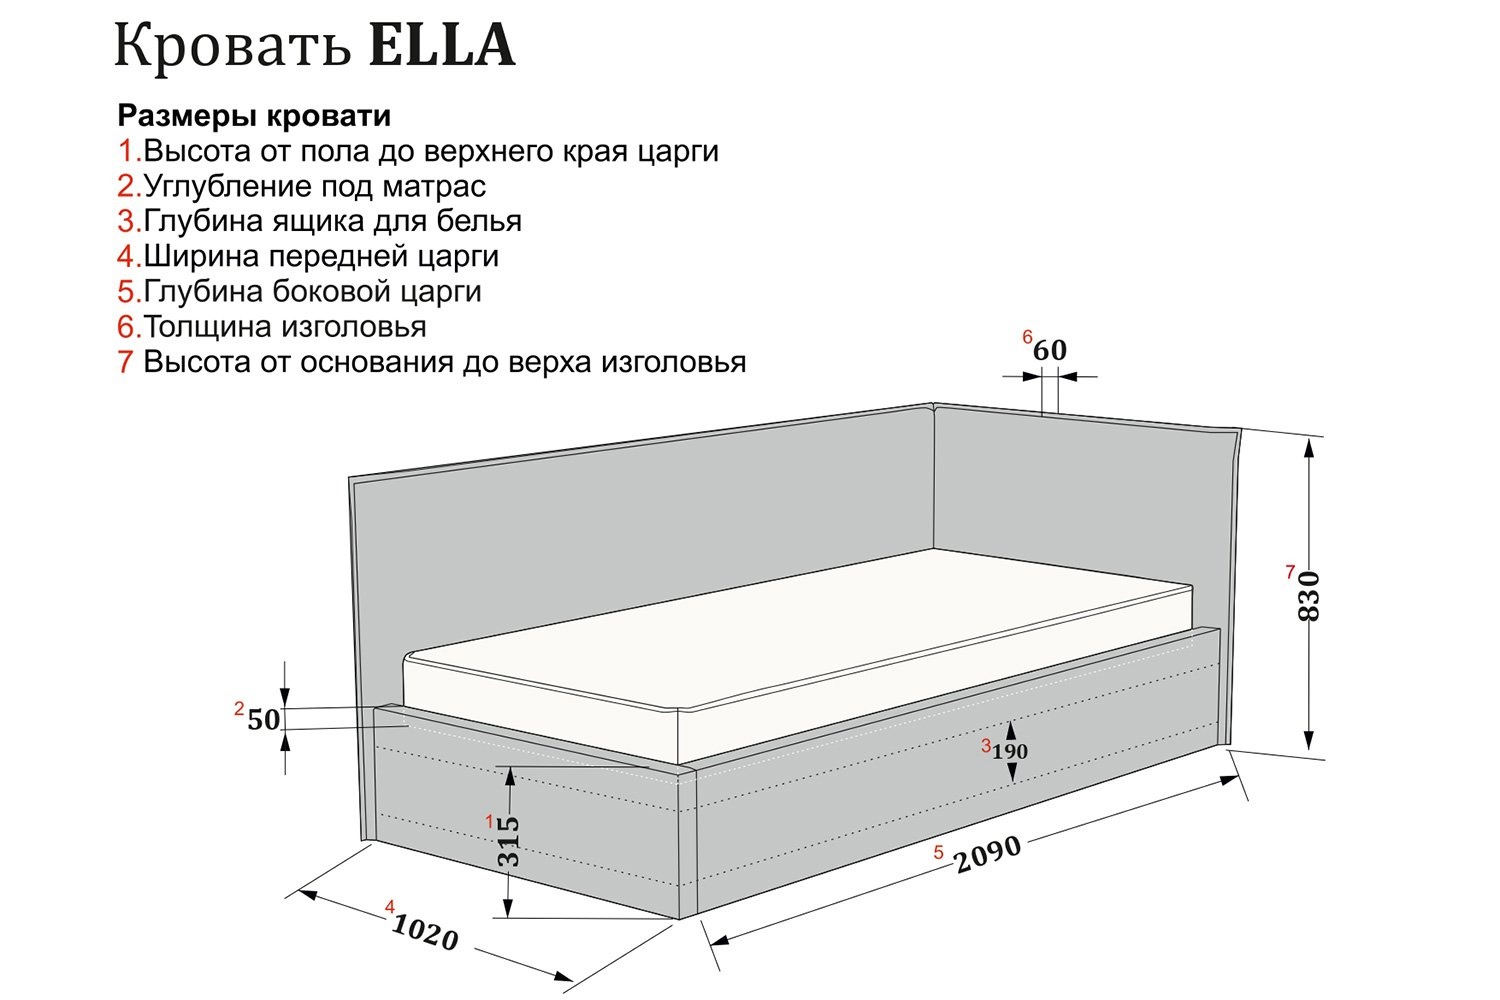 Кровать Ella photo 5